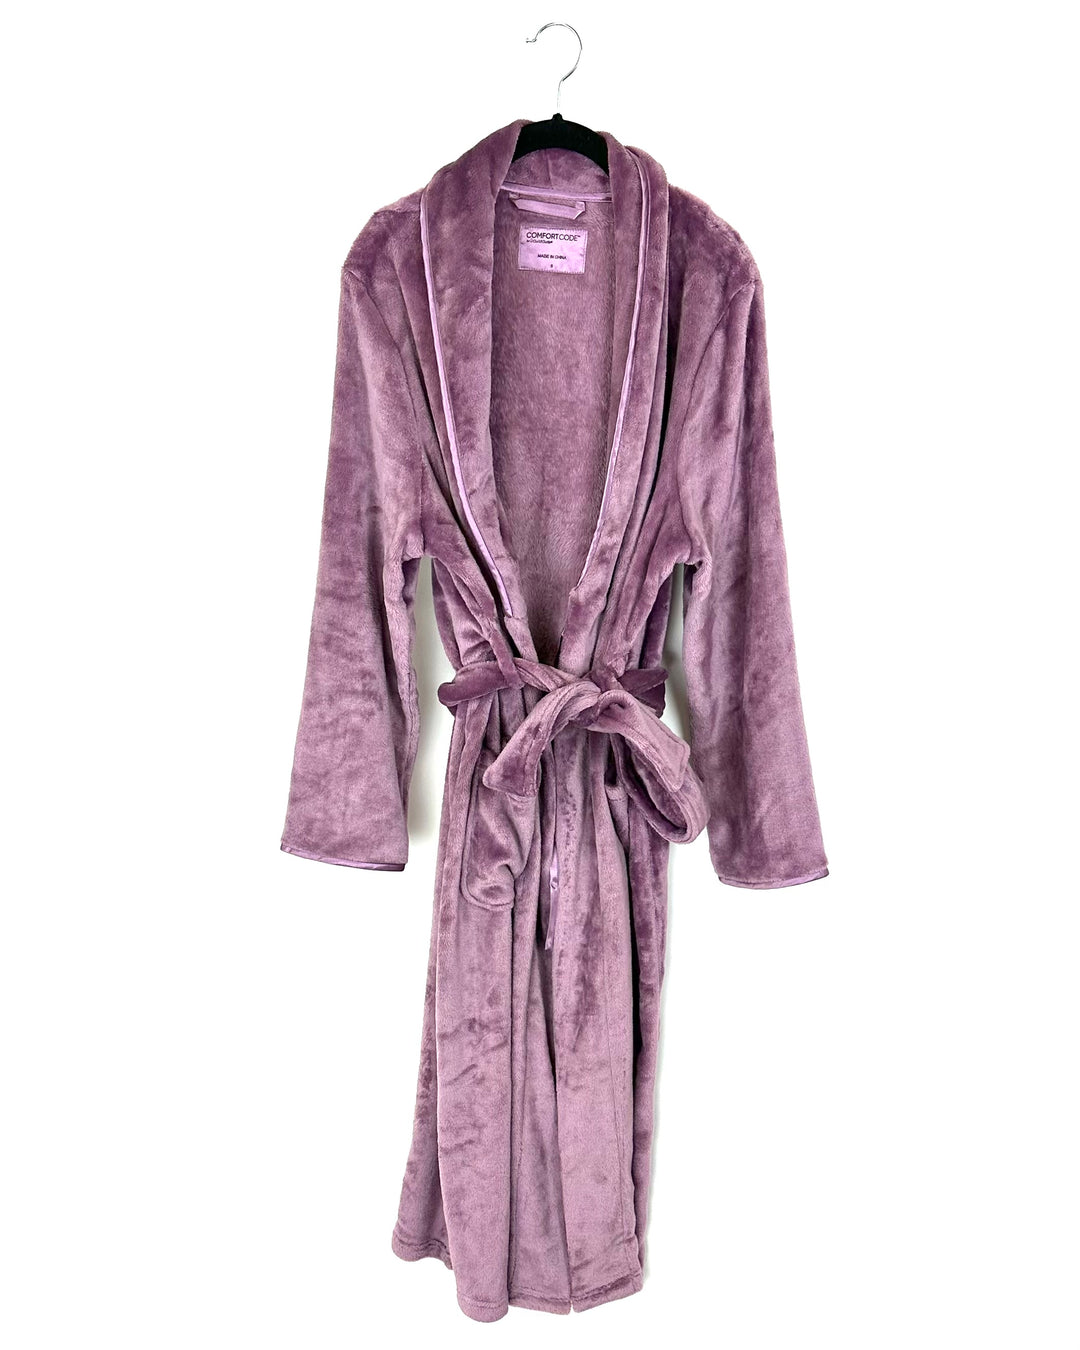 Soft Fleece Purple Robe - Size 4/6